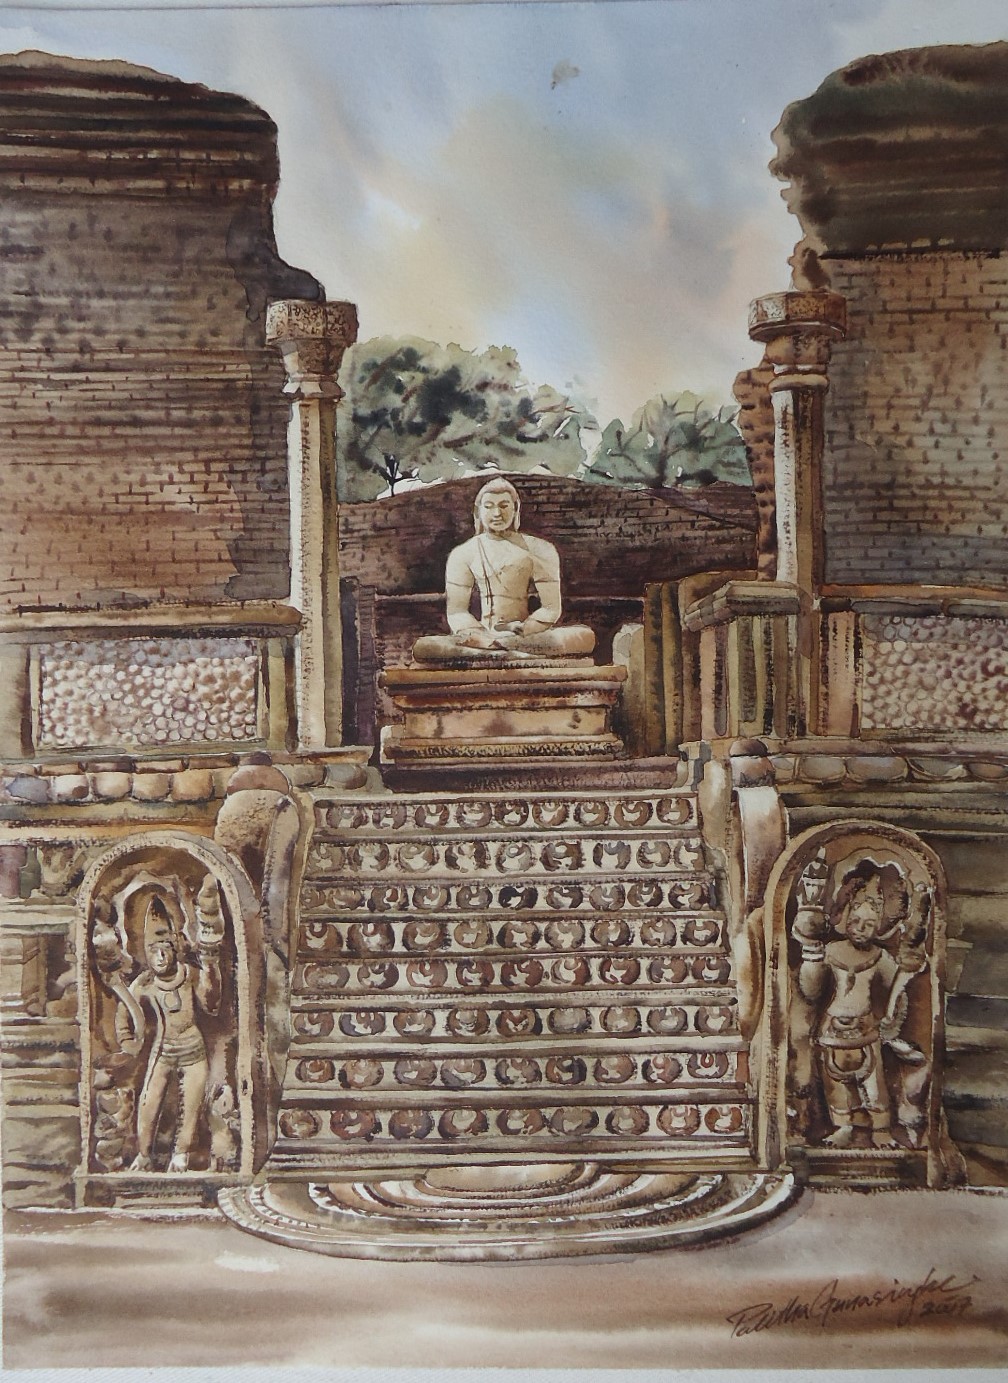 Watadagaya, Polonnaruwa by Palitha Gunasinghe